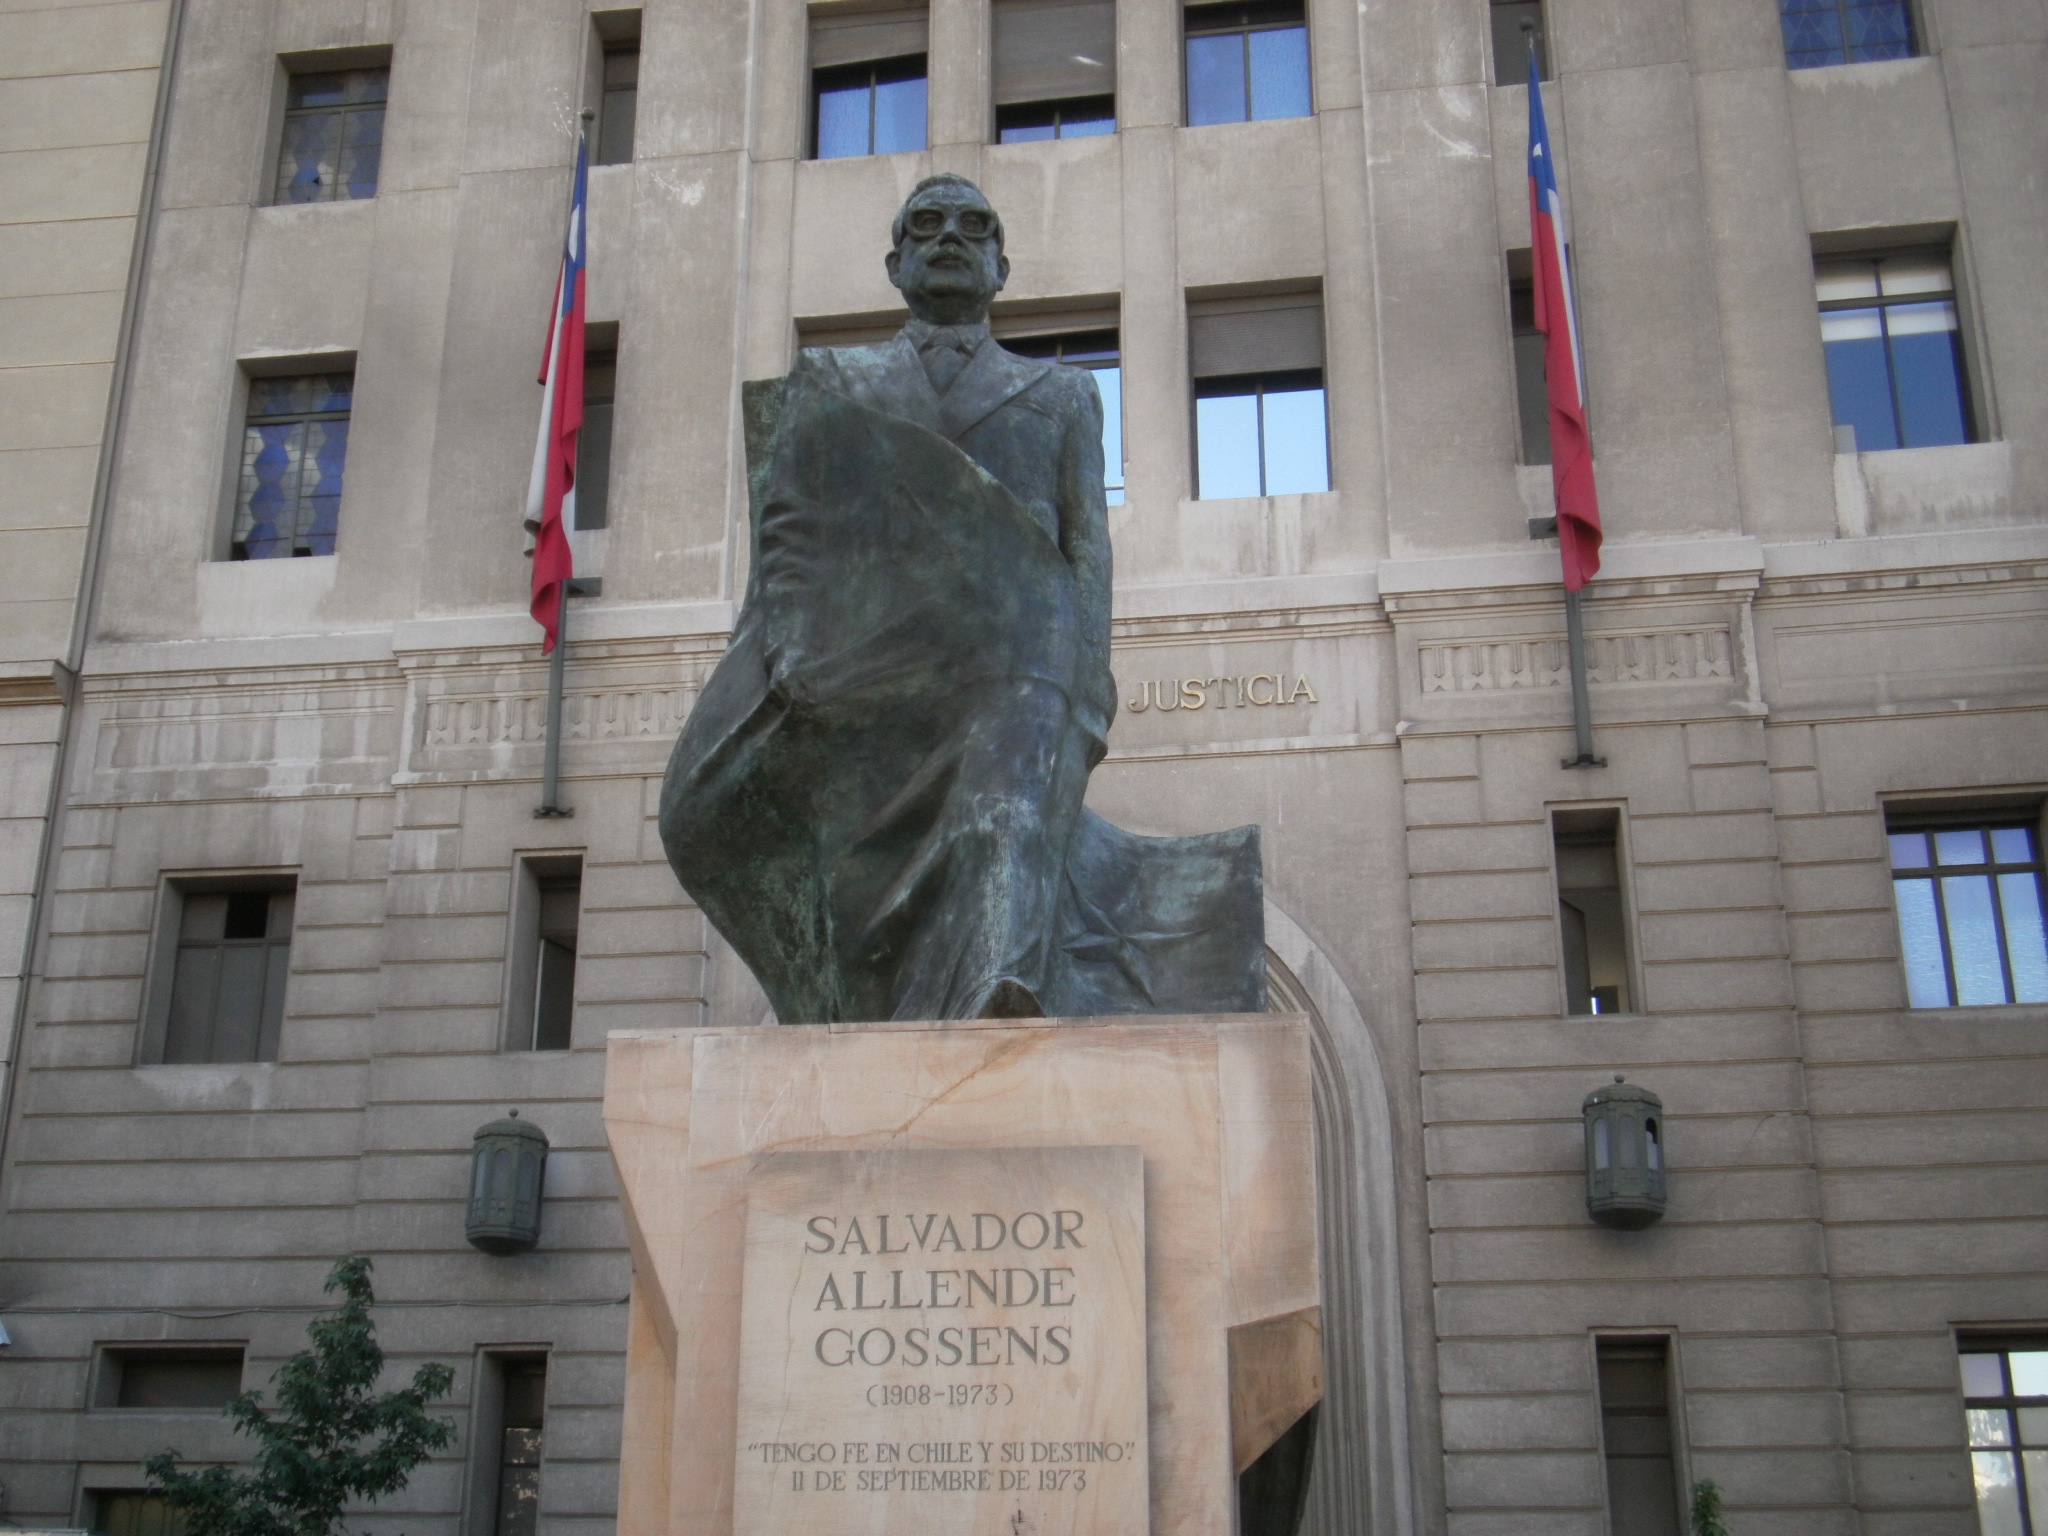 Kast no es el único: Petición en Change.org busca sacar estatua de Allende